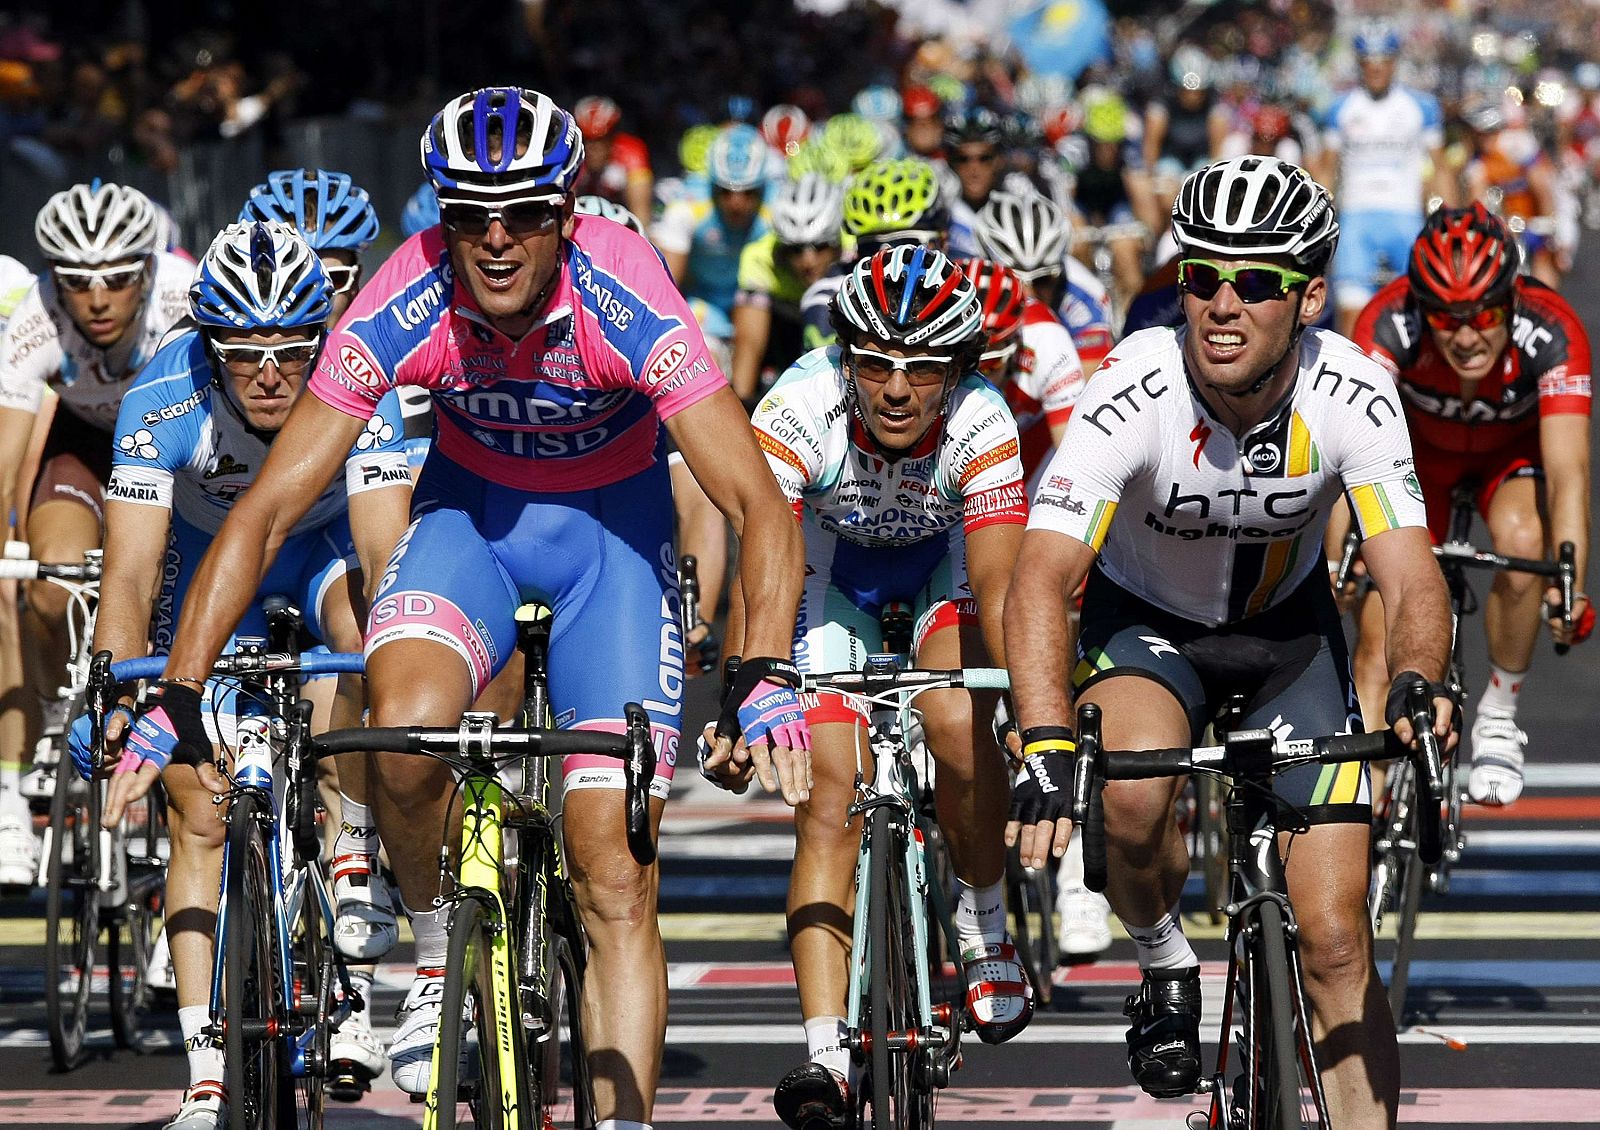 Petacchi se impone a Cavendish en el sprint final.